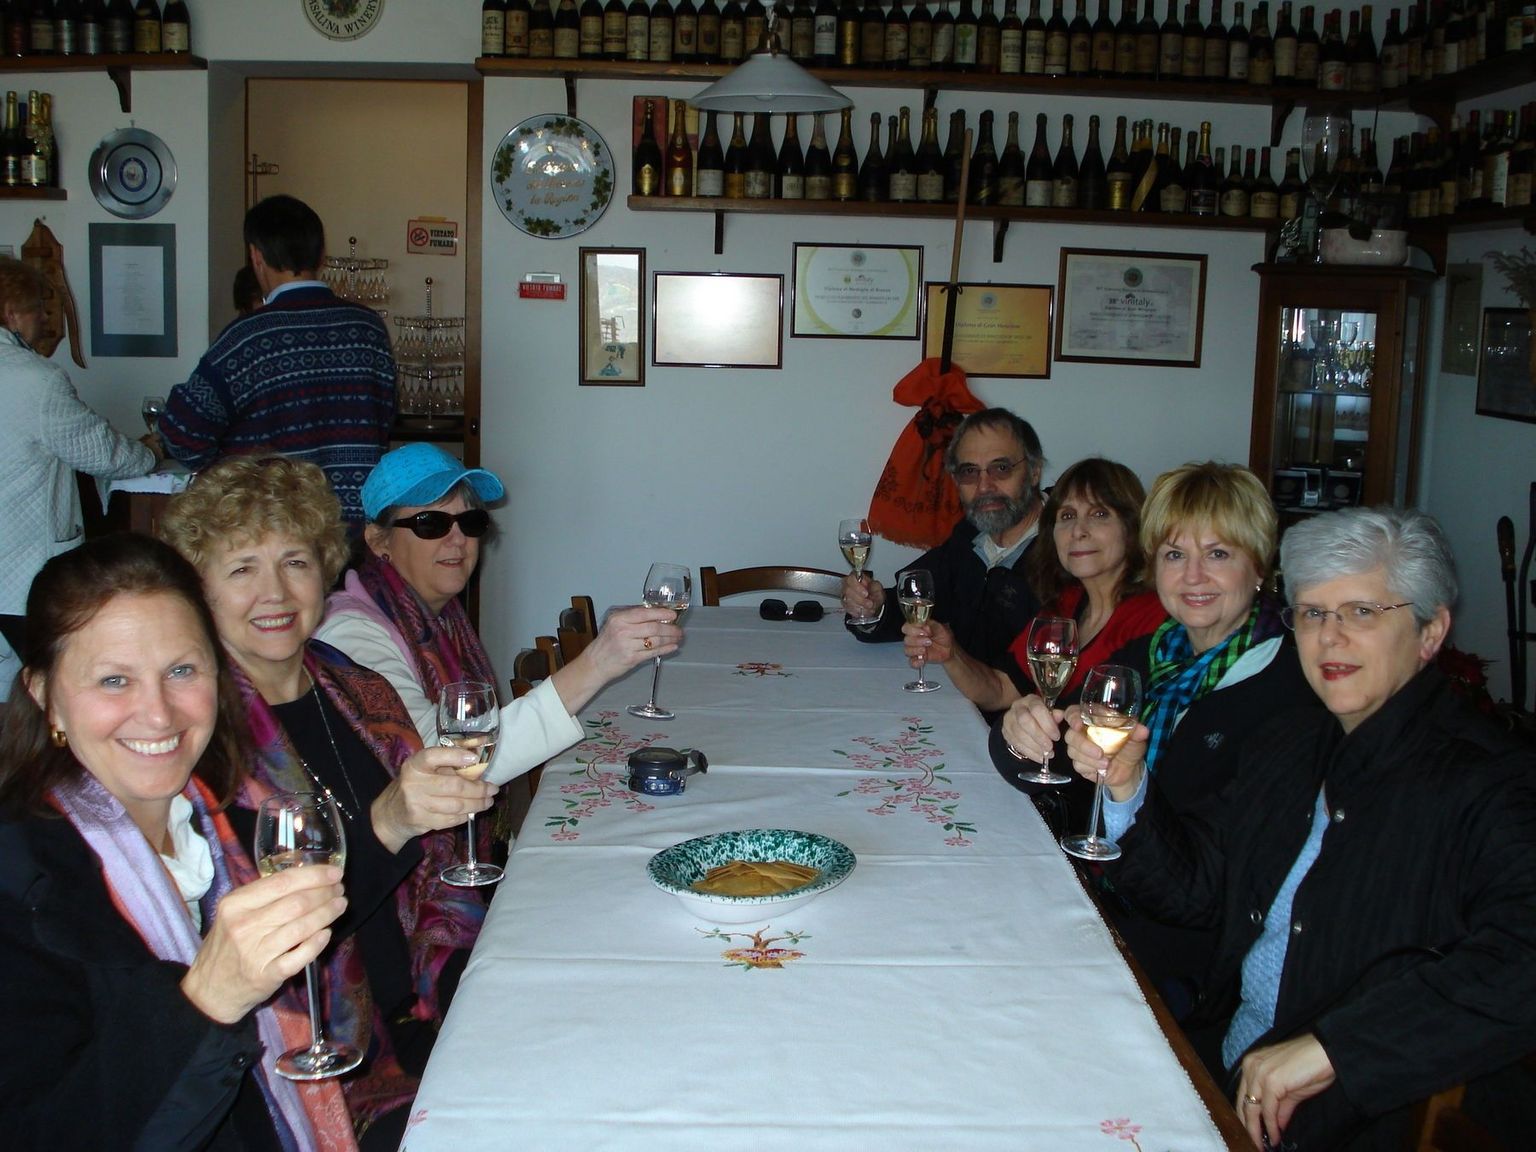 Veneto winery, Casalina Winery